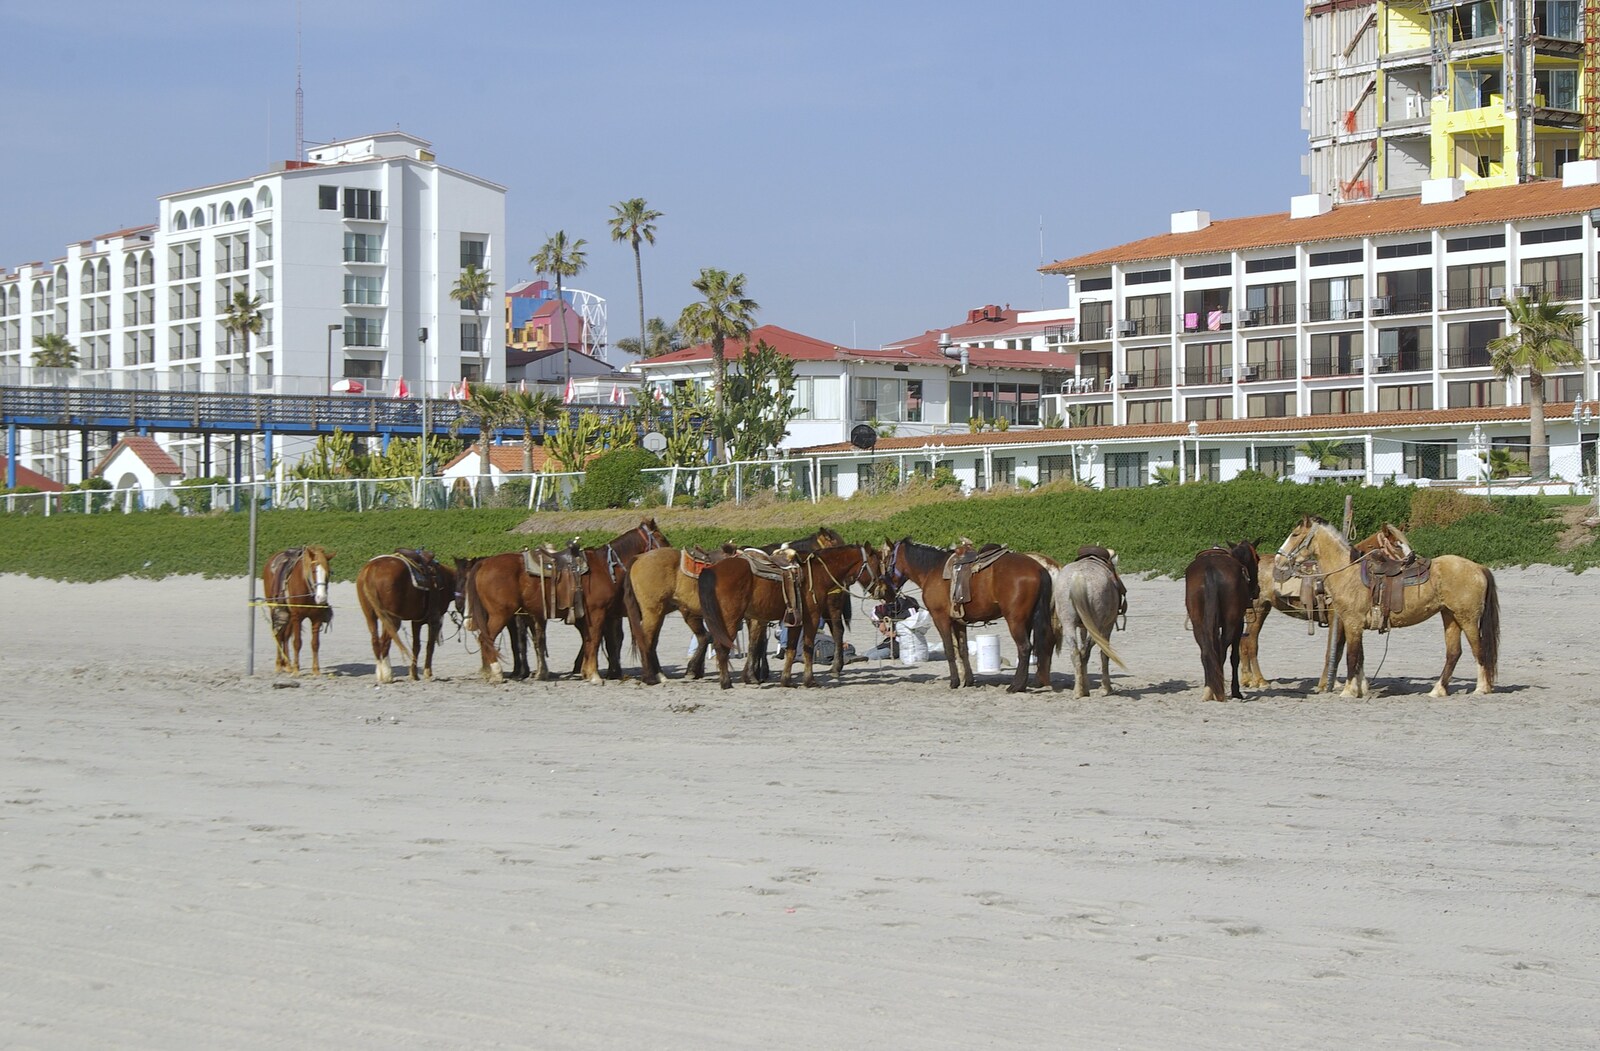 Rosarito and Tijuana, Baja California, Mexico - 2nd March 2008: Horses on the beach